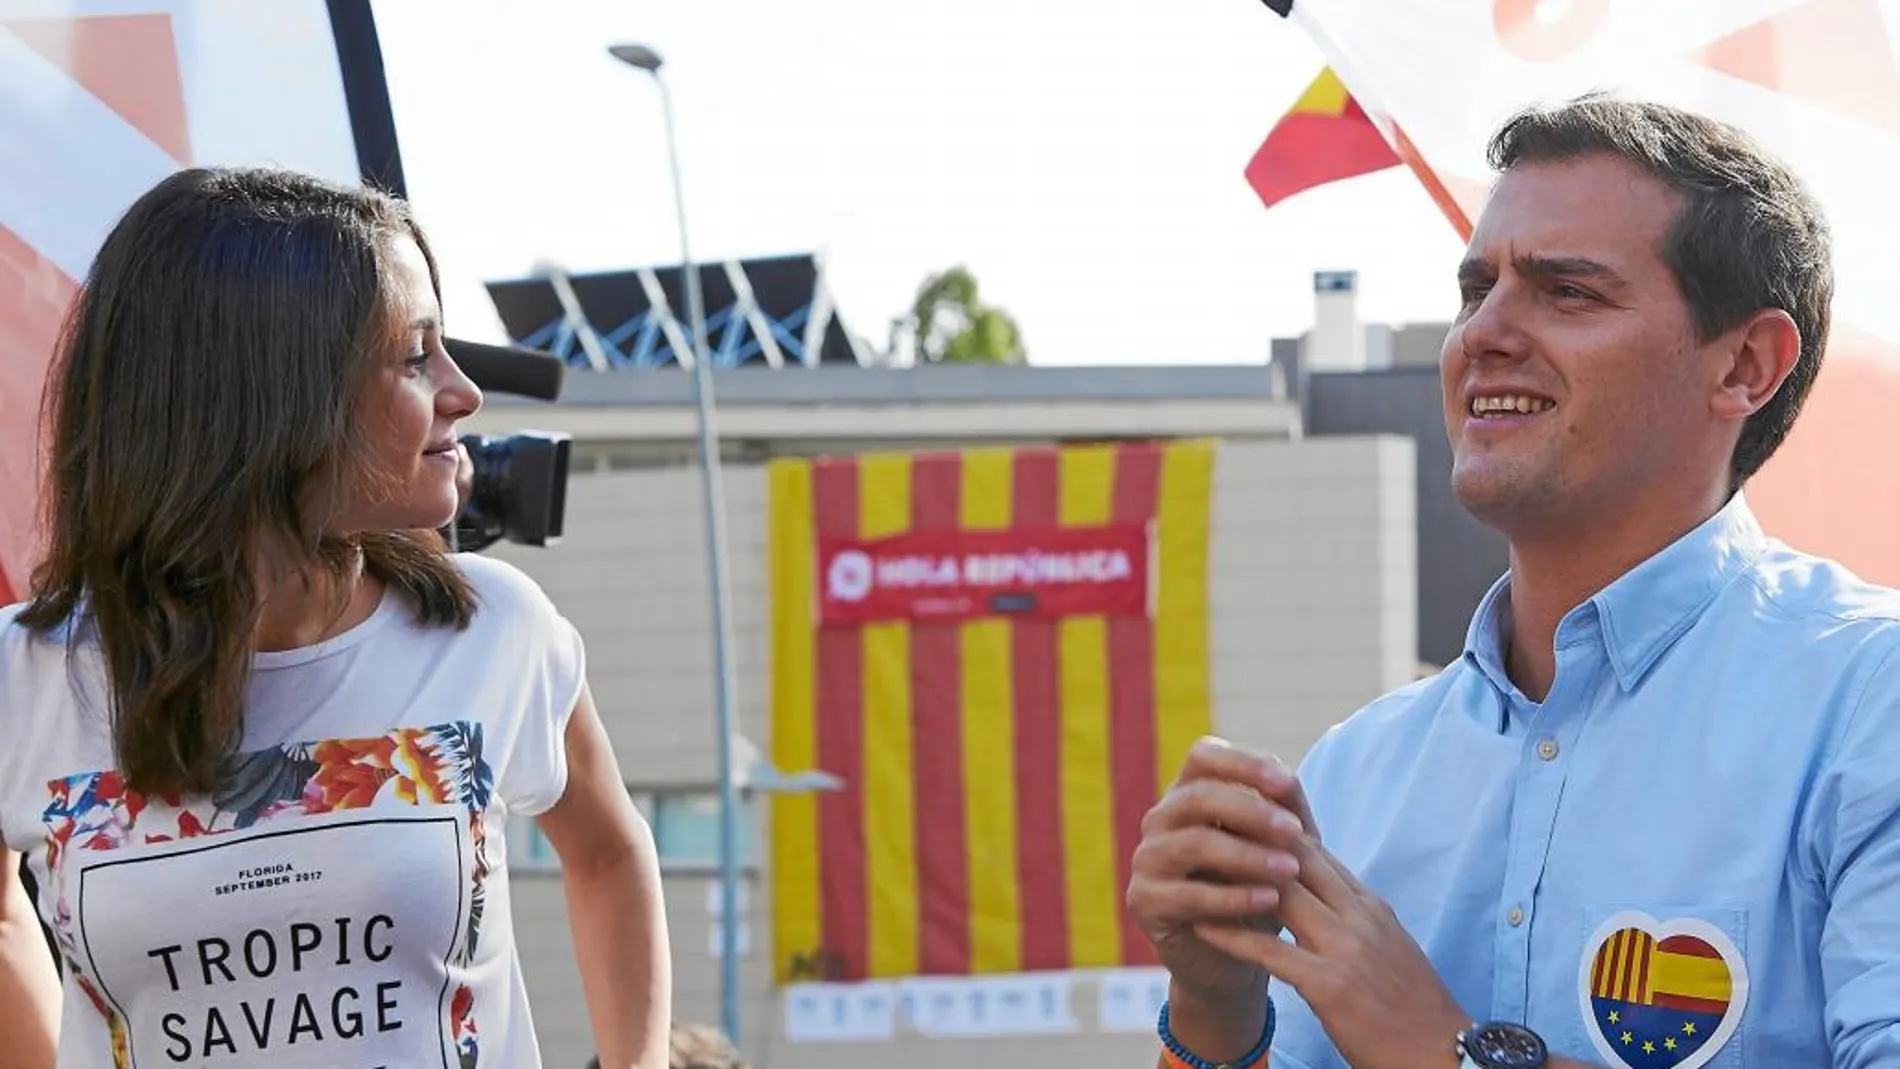 El presidente de Ciudadanos, Albert Rivera, conversa con la líder de la oposición en Cataluña, Inés Arrimadas, durante un acto político en Sant Andreu de Llavaneras (Barcelona)/ Efe